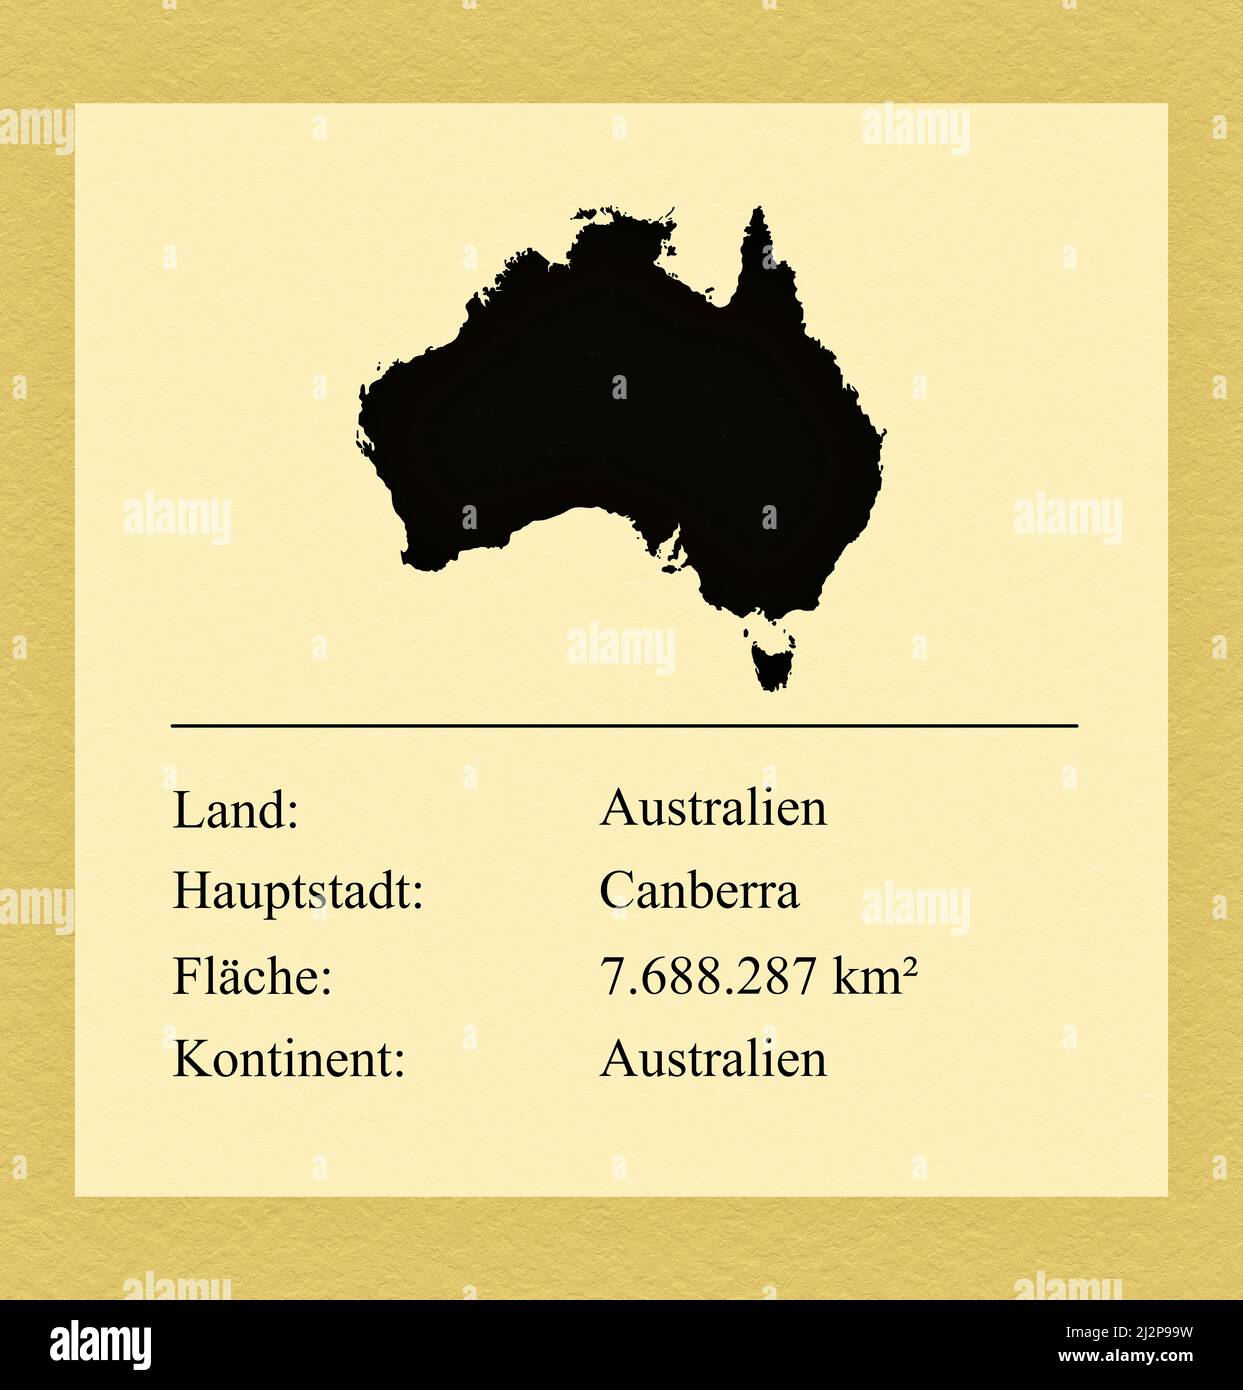 Umrisse des Landes Australien, darunter ein kleiner Steckbrief mit Ländernamen, Hauptstadt, Fläche und Kontinent Foto Stock